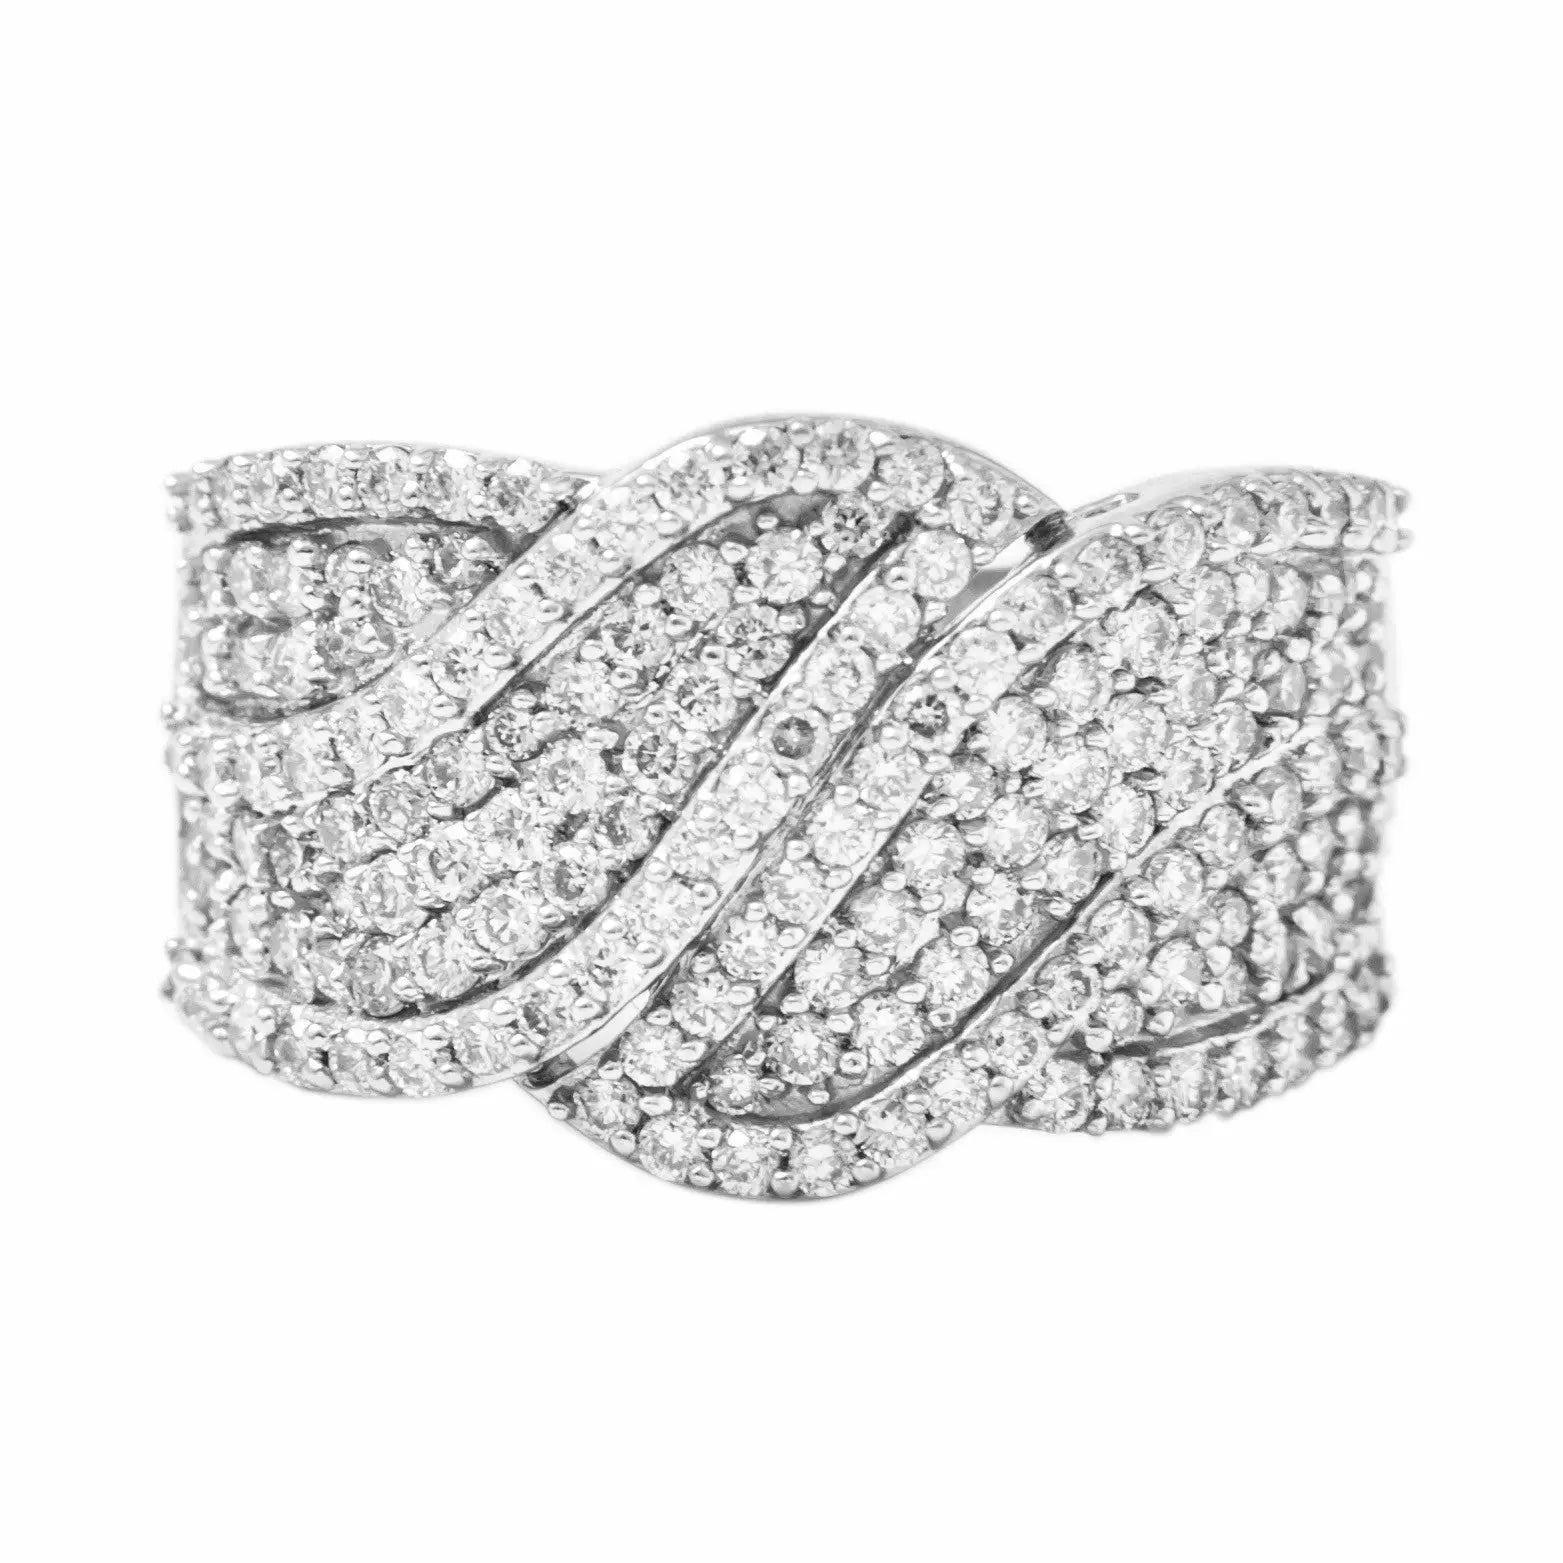 Broad Designer Bridal Ring with Diamonds in Platinum JL PT 263   Jewelove